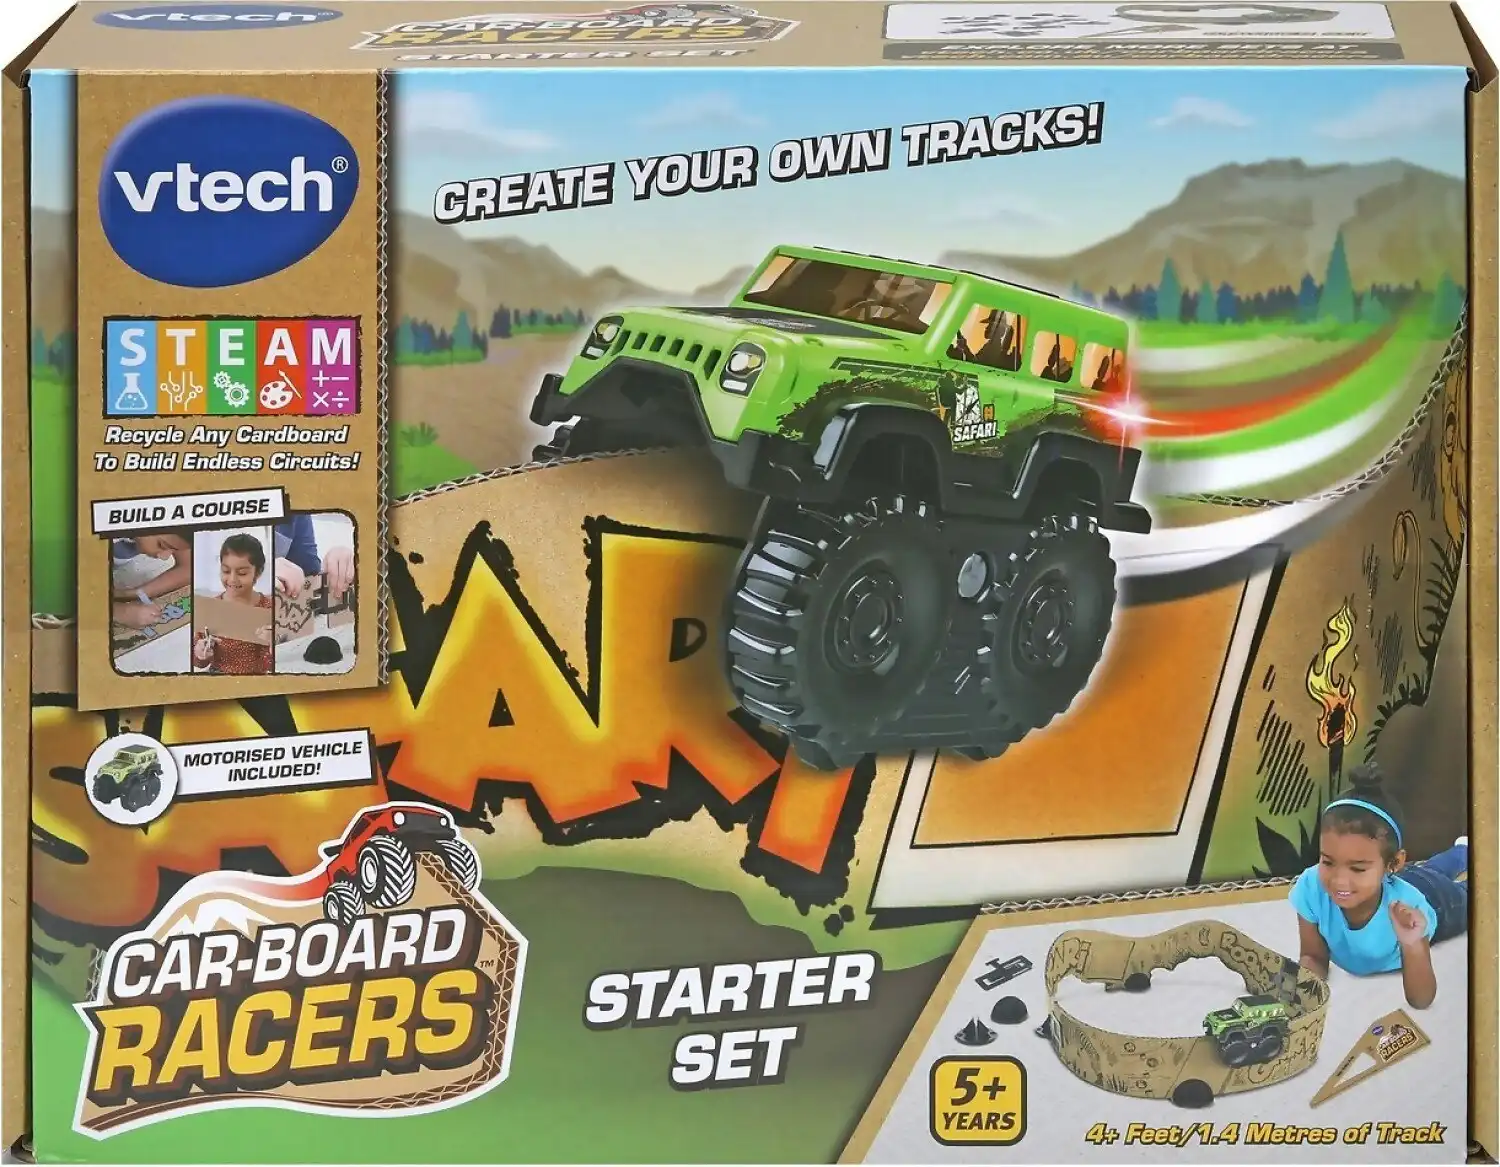 VTech - Car-board Racers Starter Set